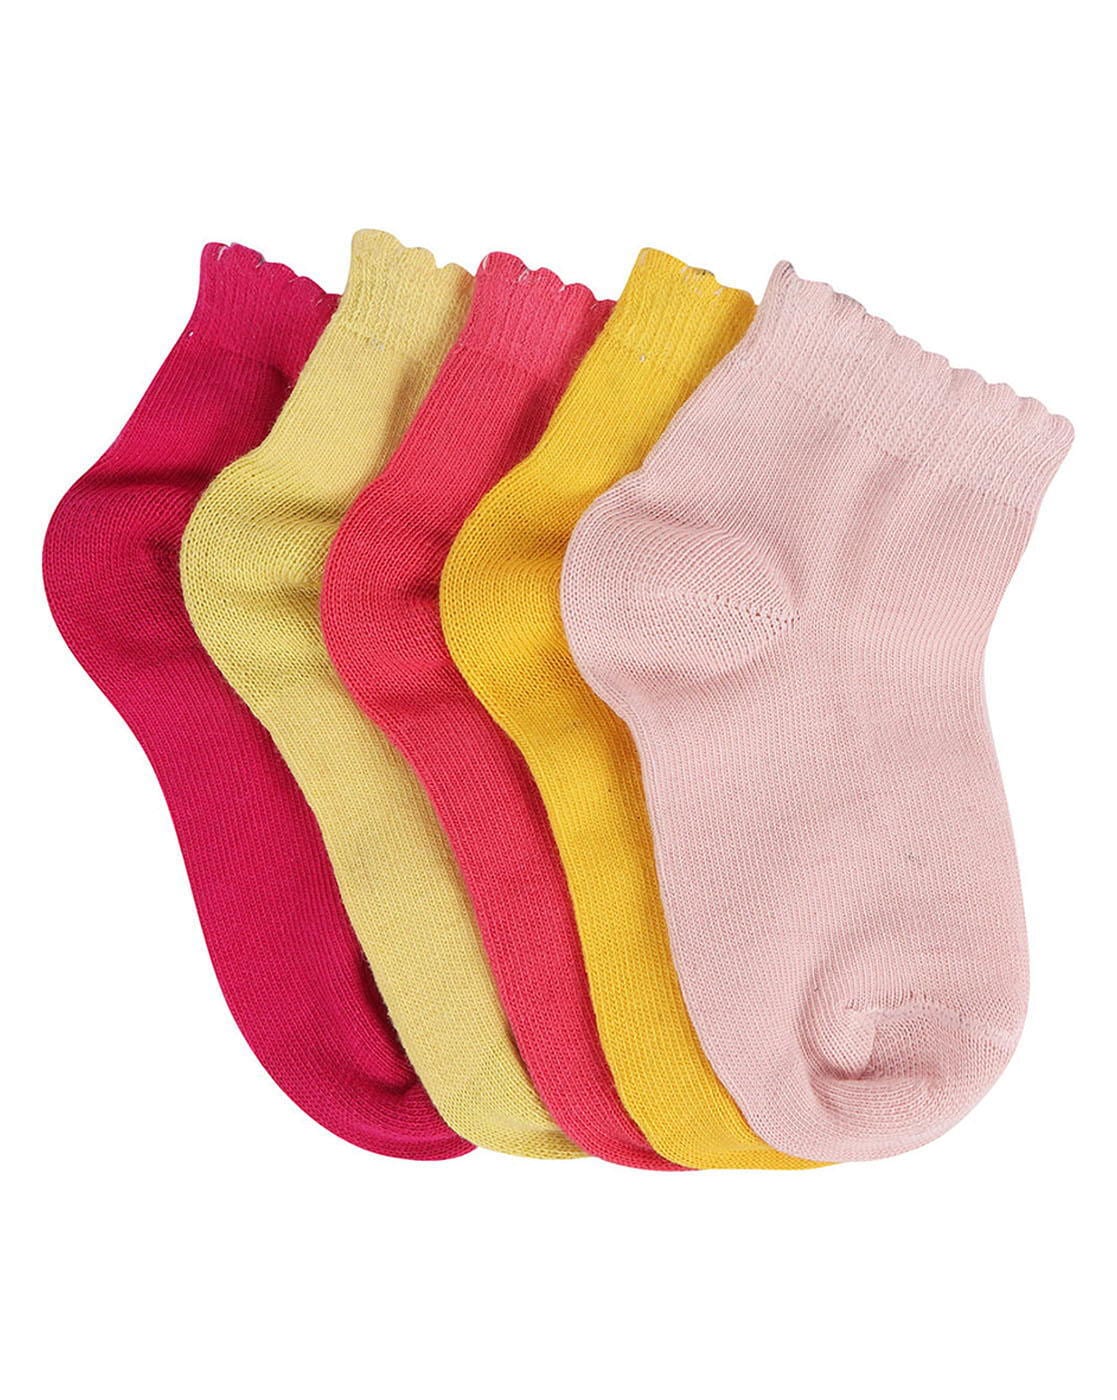 Girls Infants Cotton Socks